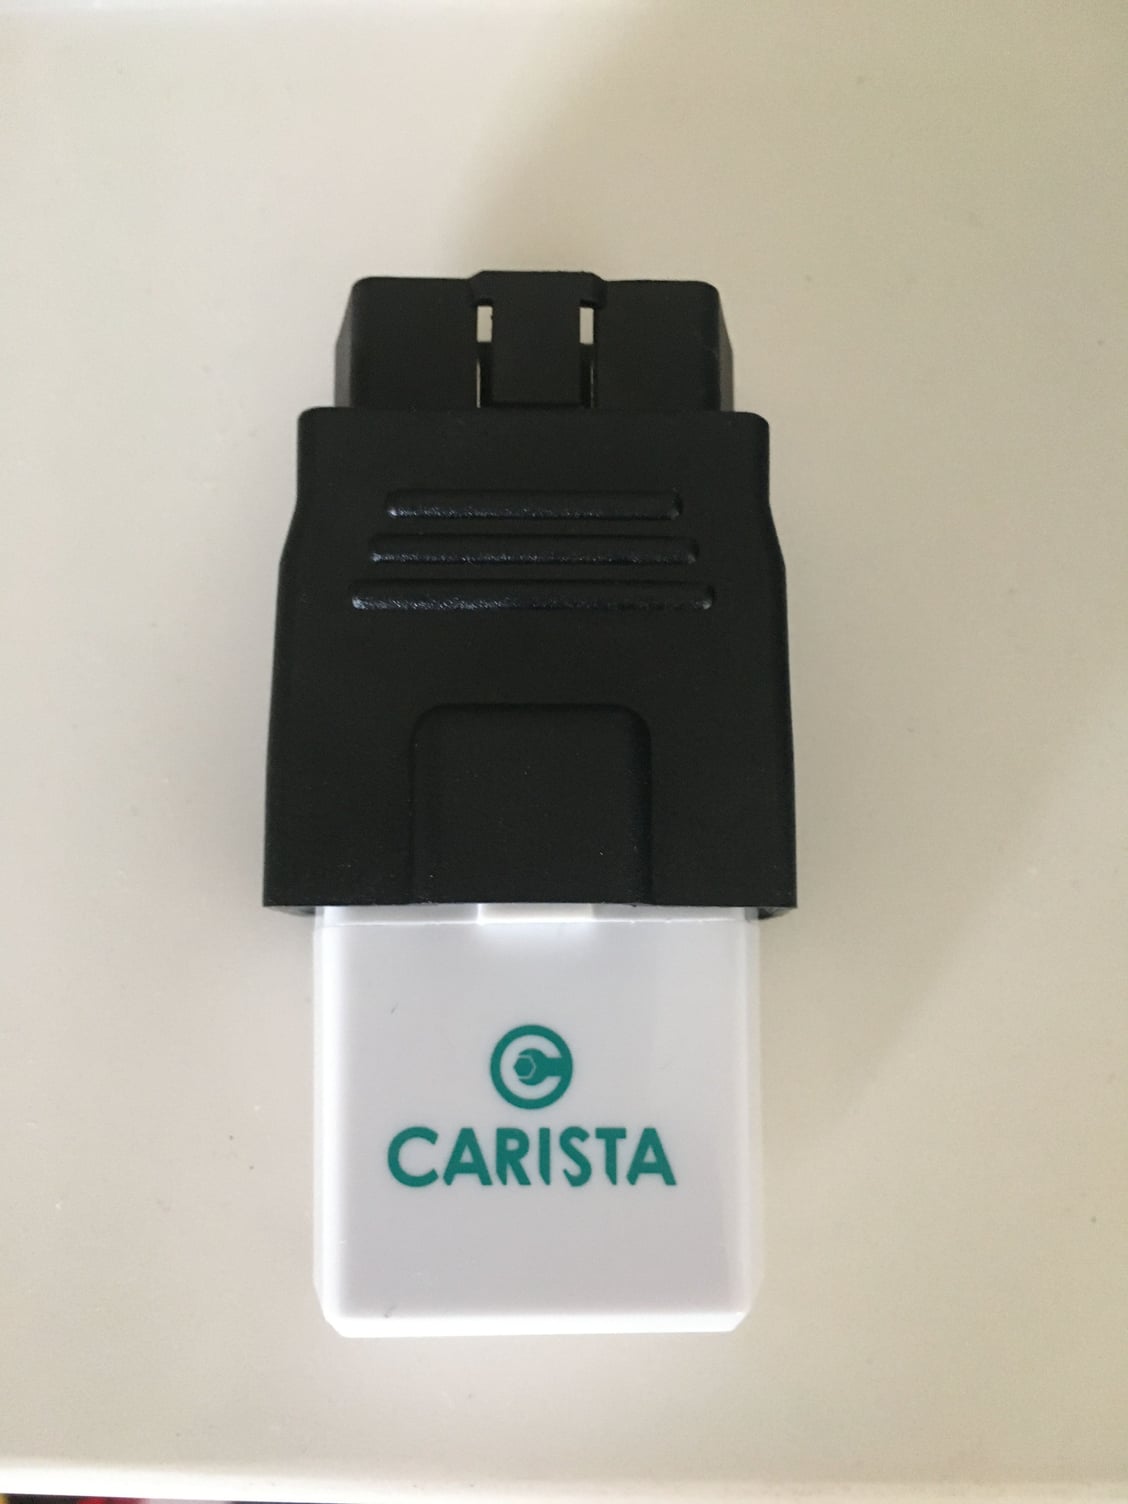 Introducing the Carista OBD device! - AudiWorld Forums